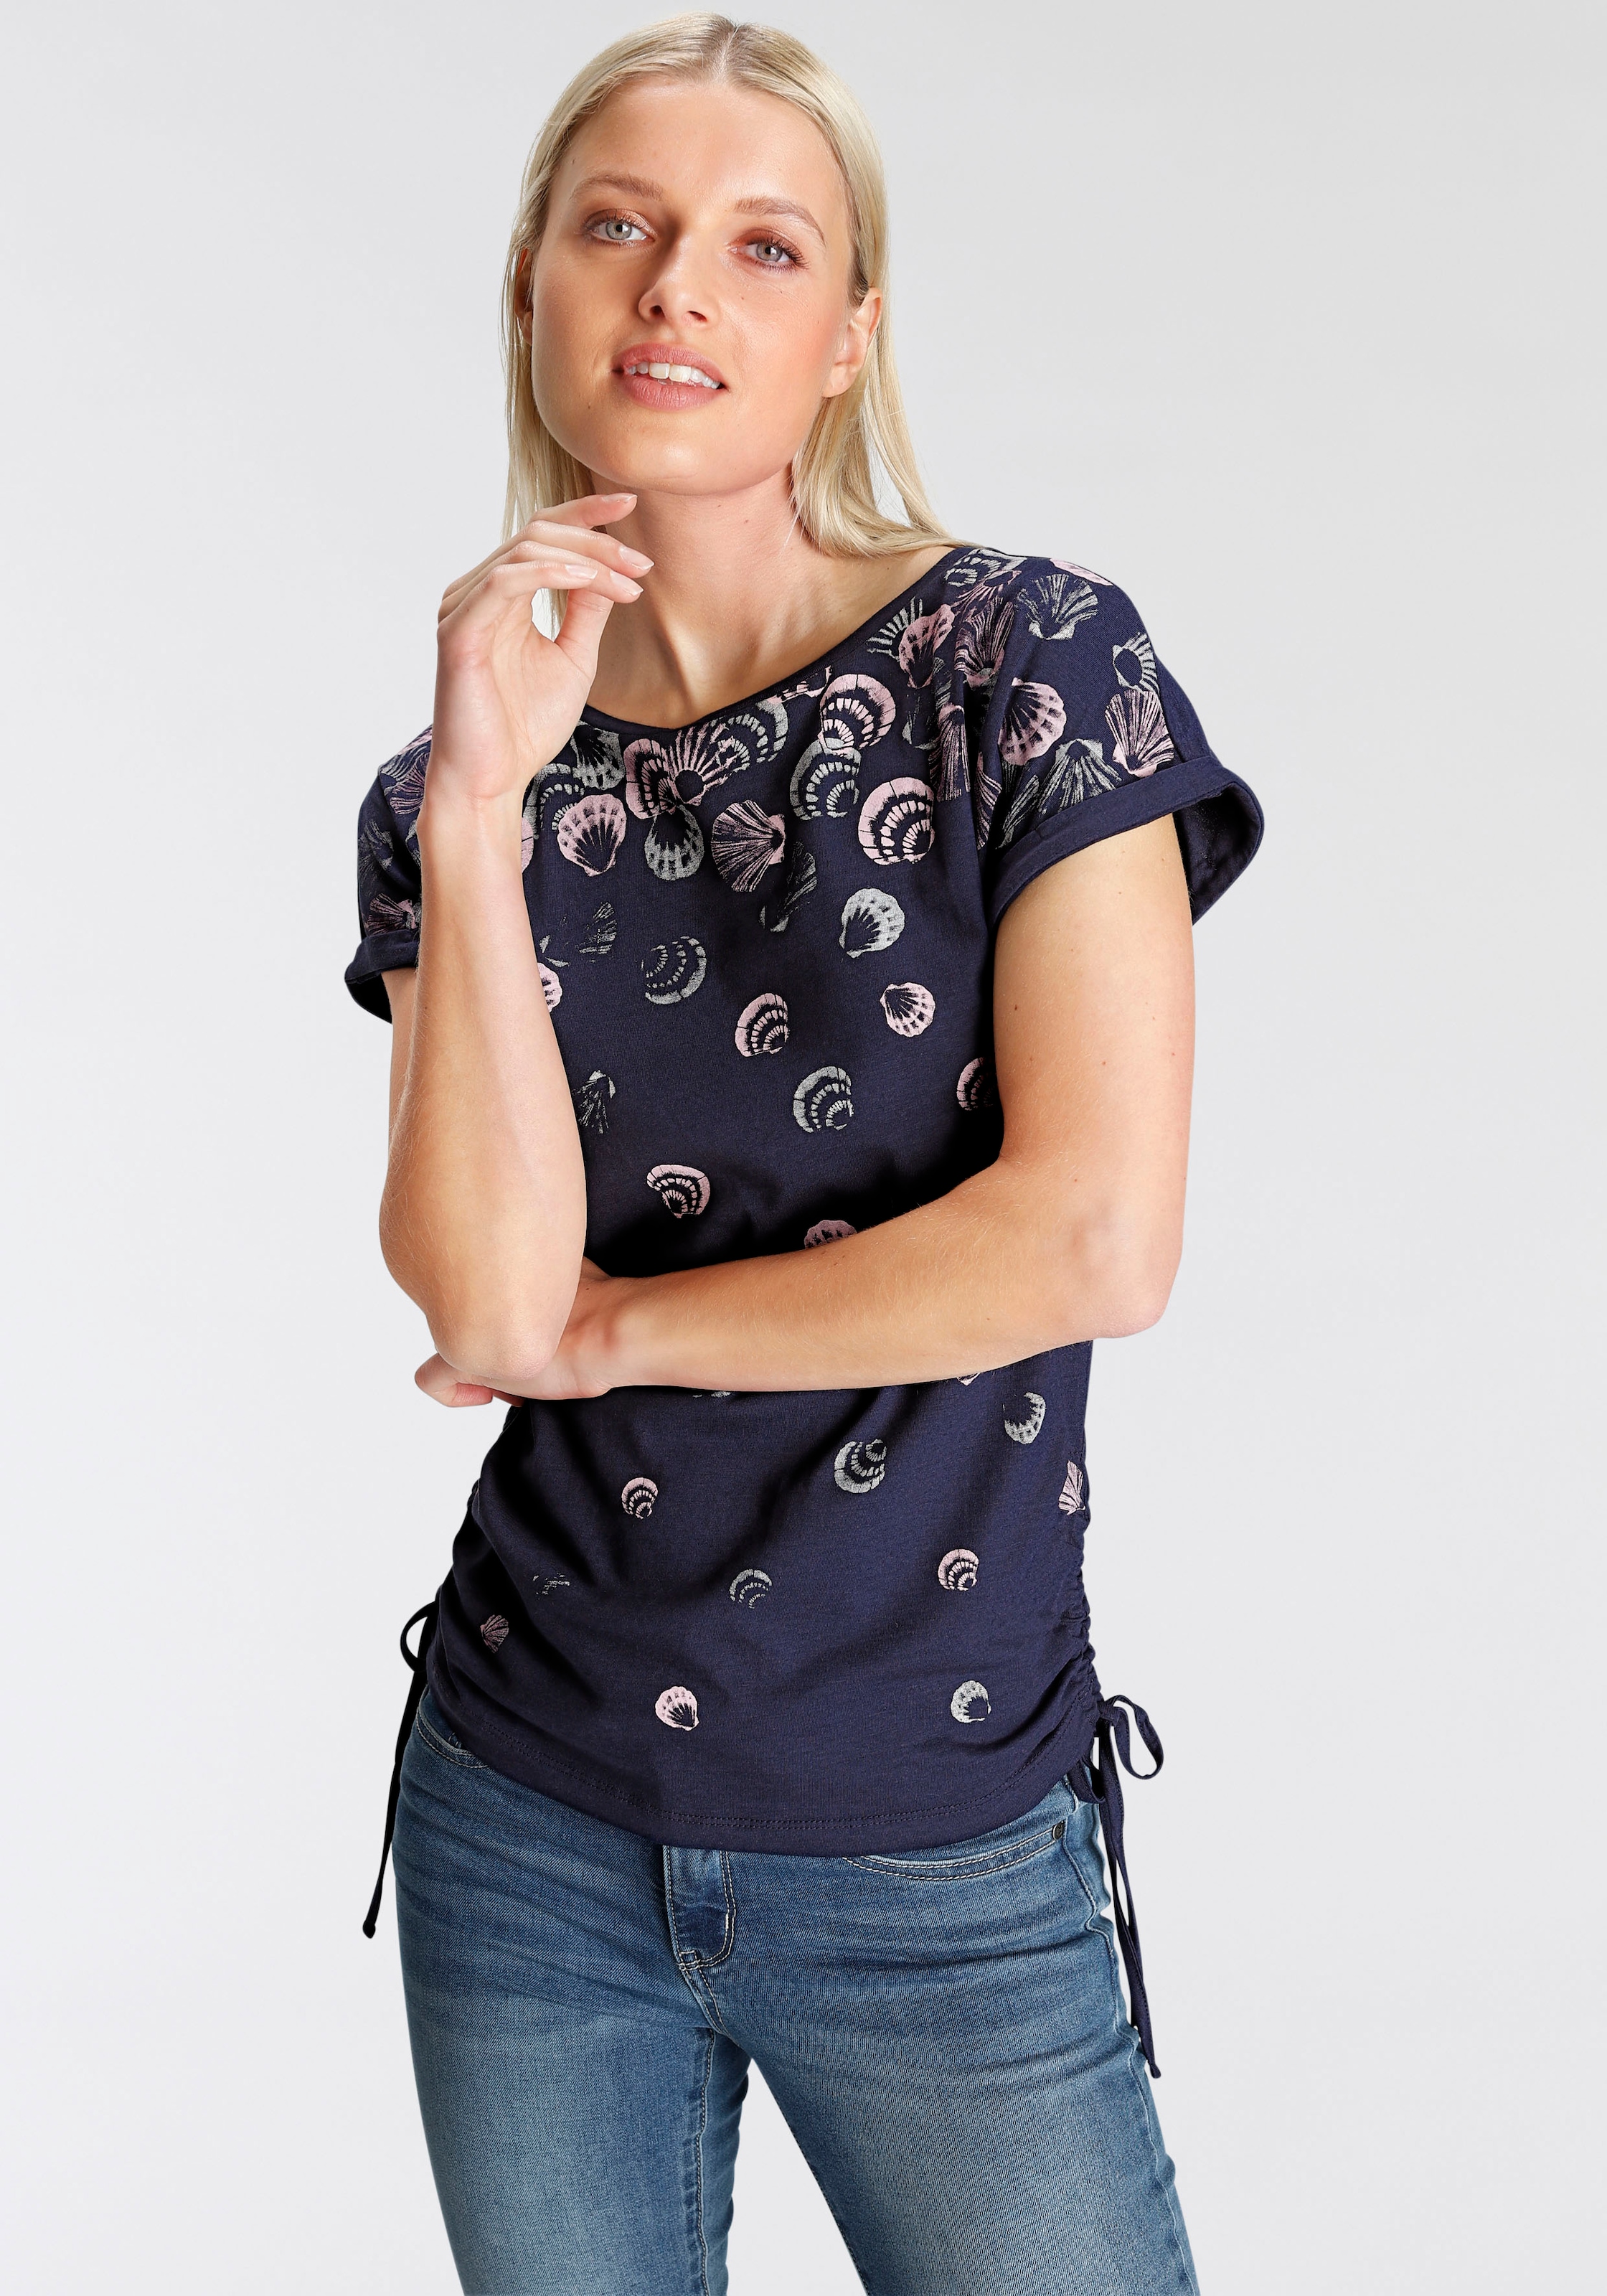 DELMAO T-Shirt, mit seitlichen Raffungen in verschiedenen Druckdesigns -  NEUE MARKE online bei OTTO